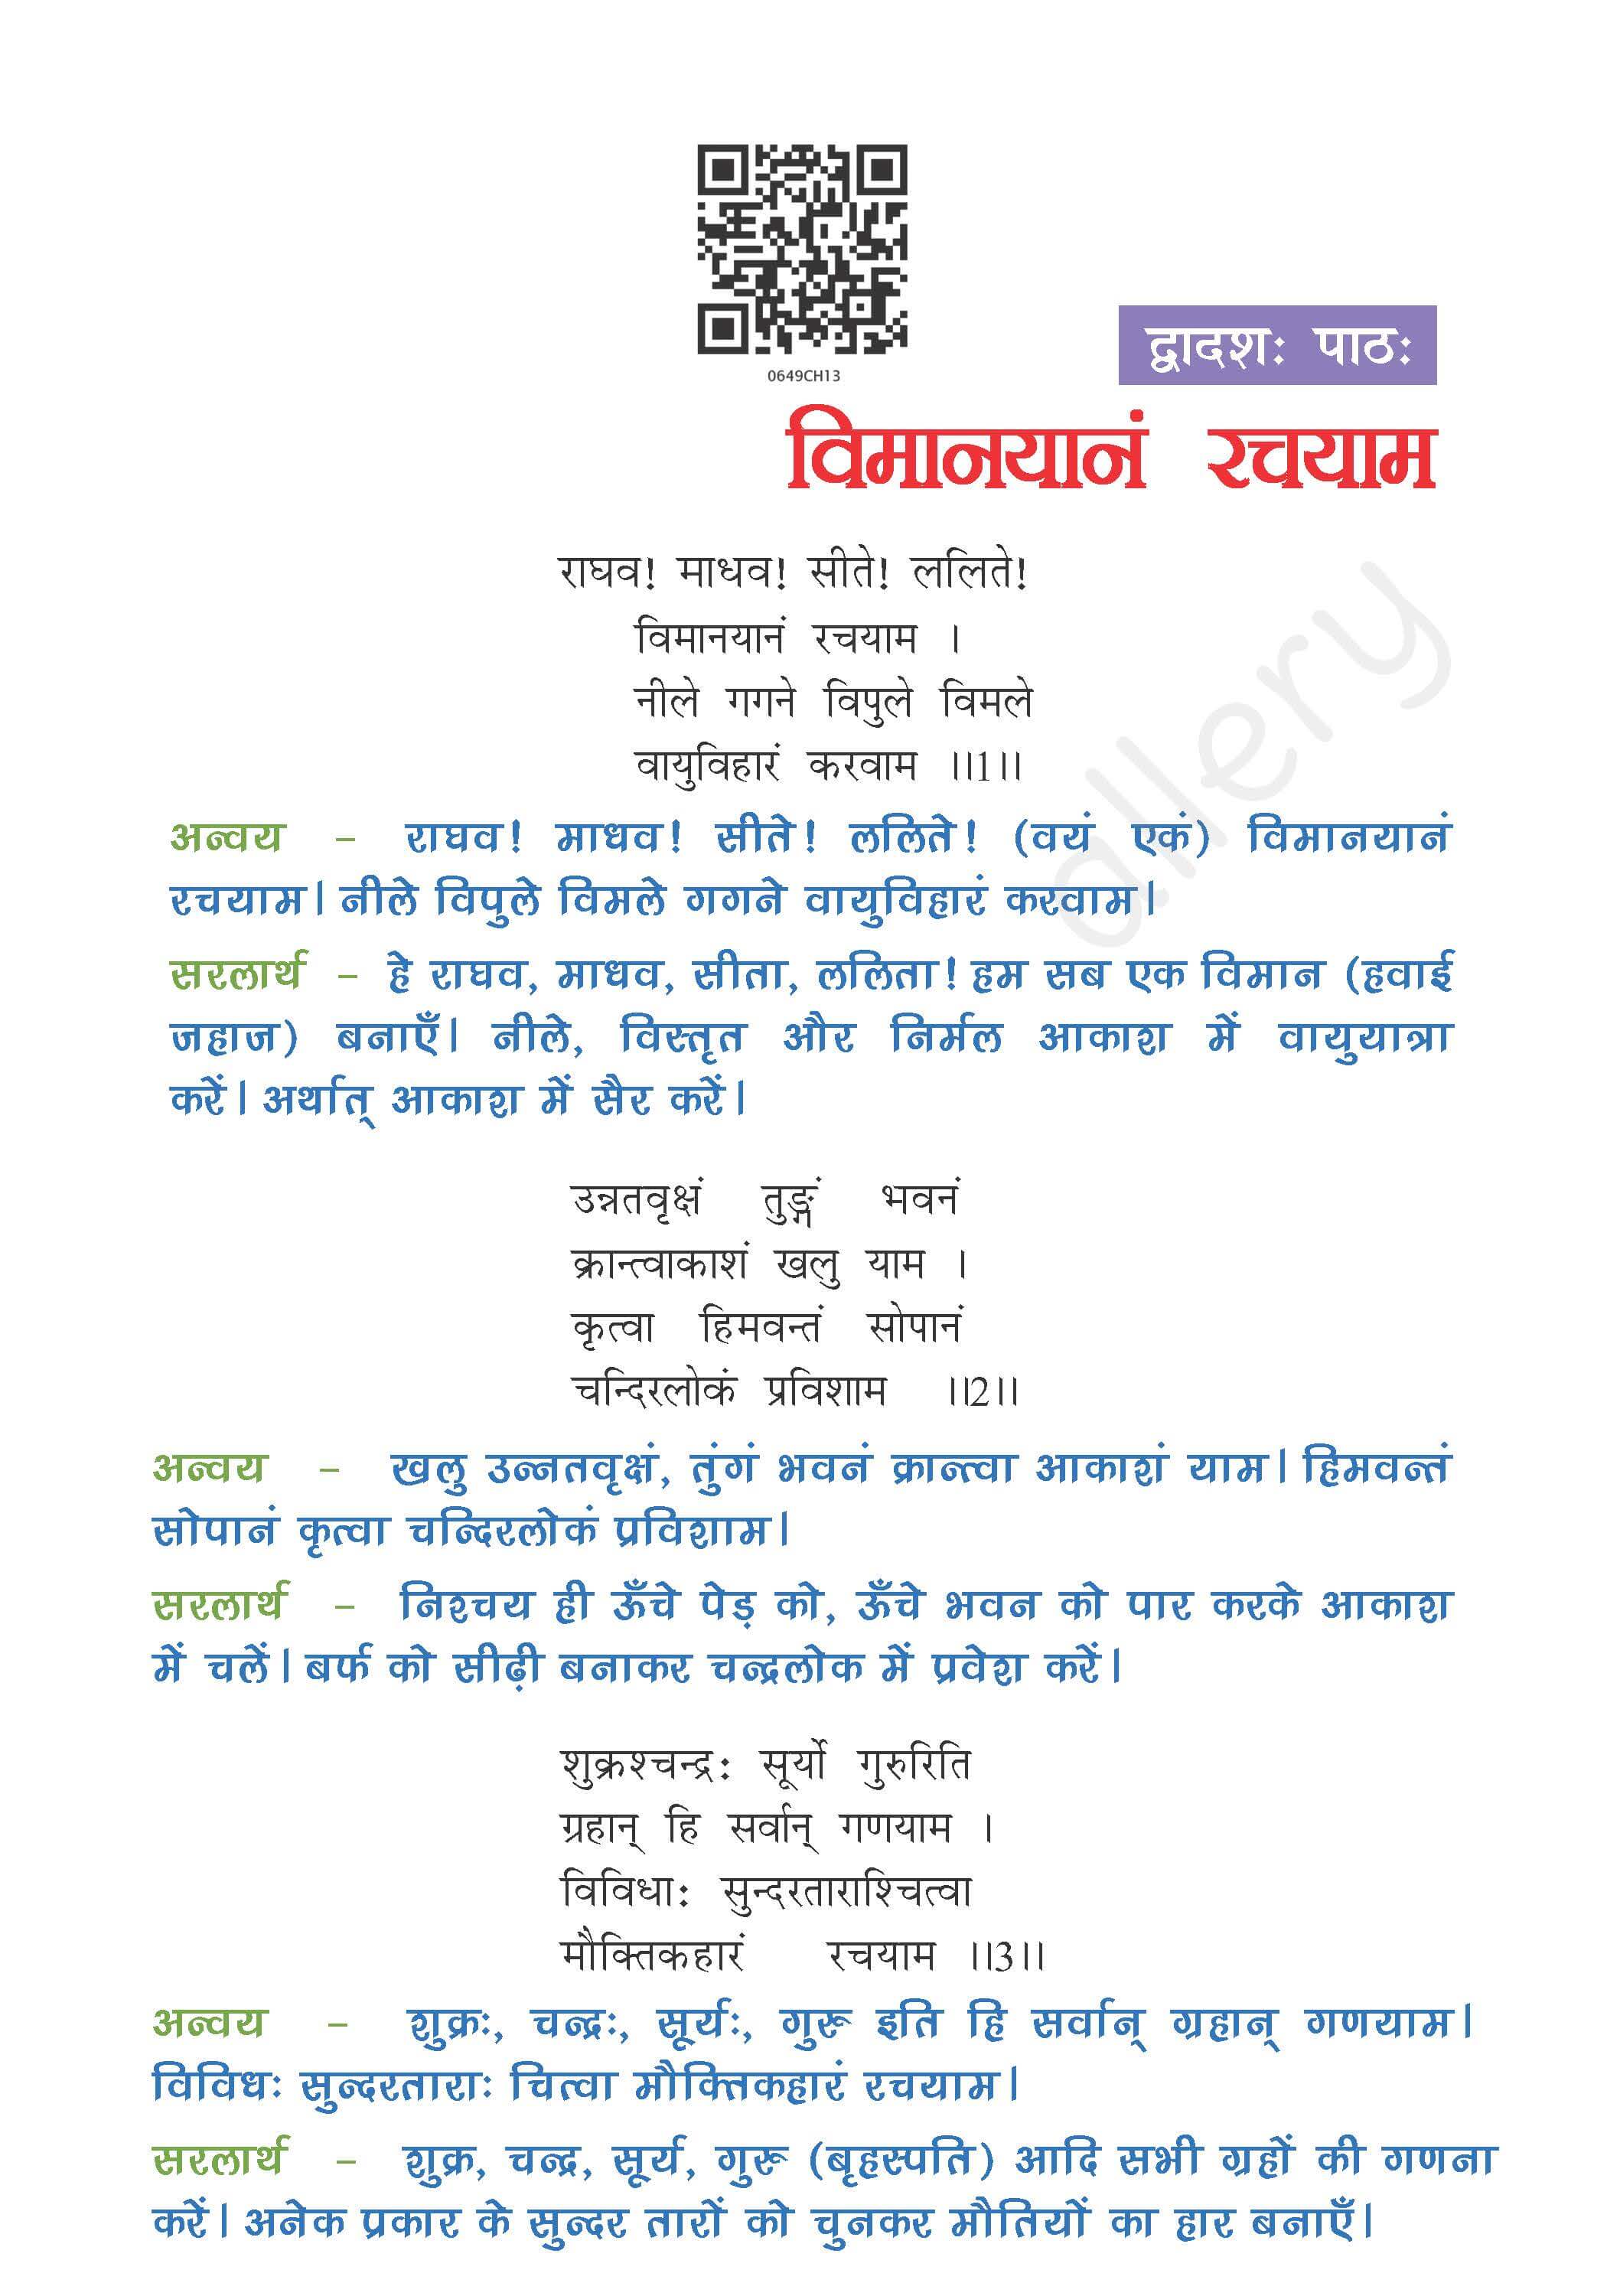 NCERT Solution For Class 6 Sanskrit Chapter 12 part 1